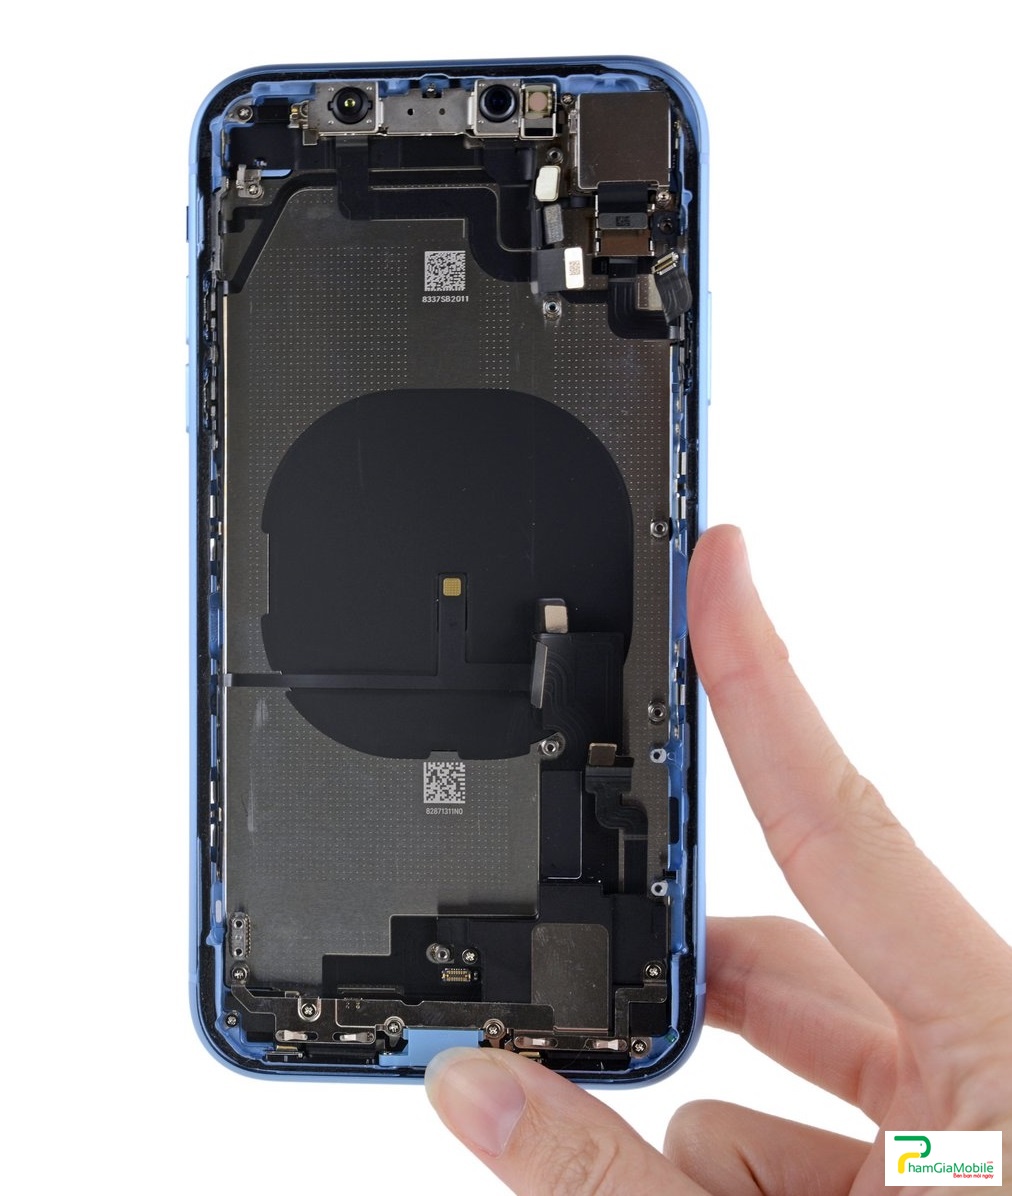 Địa chỉ chuyên sửa chữa, sửa lỗi, khắc phục sạc iPhone XR 2019 không báo gì, Sửa Sạc USB Tai Nghe Mic iPhone XR 2019 Chân Sạc, Chui Sạc Chính hãng uy tín giá tốt tại phamgiamobile 